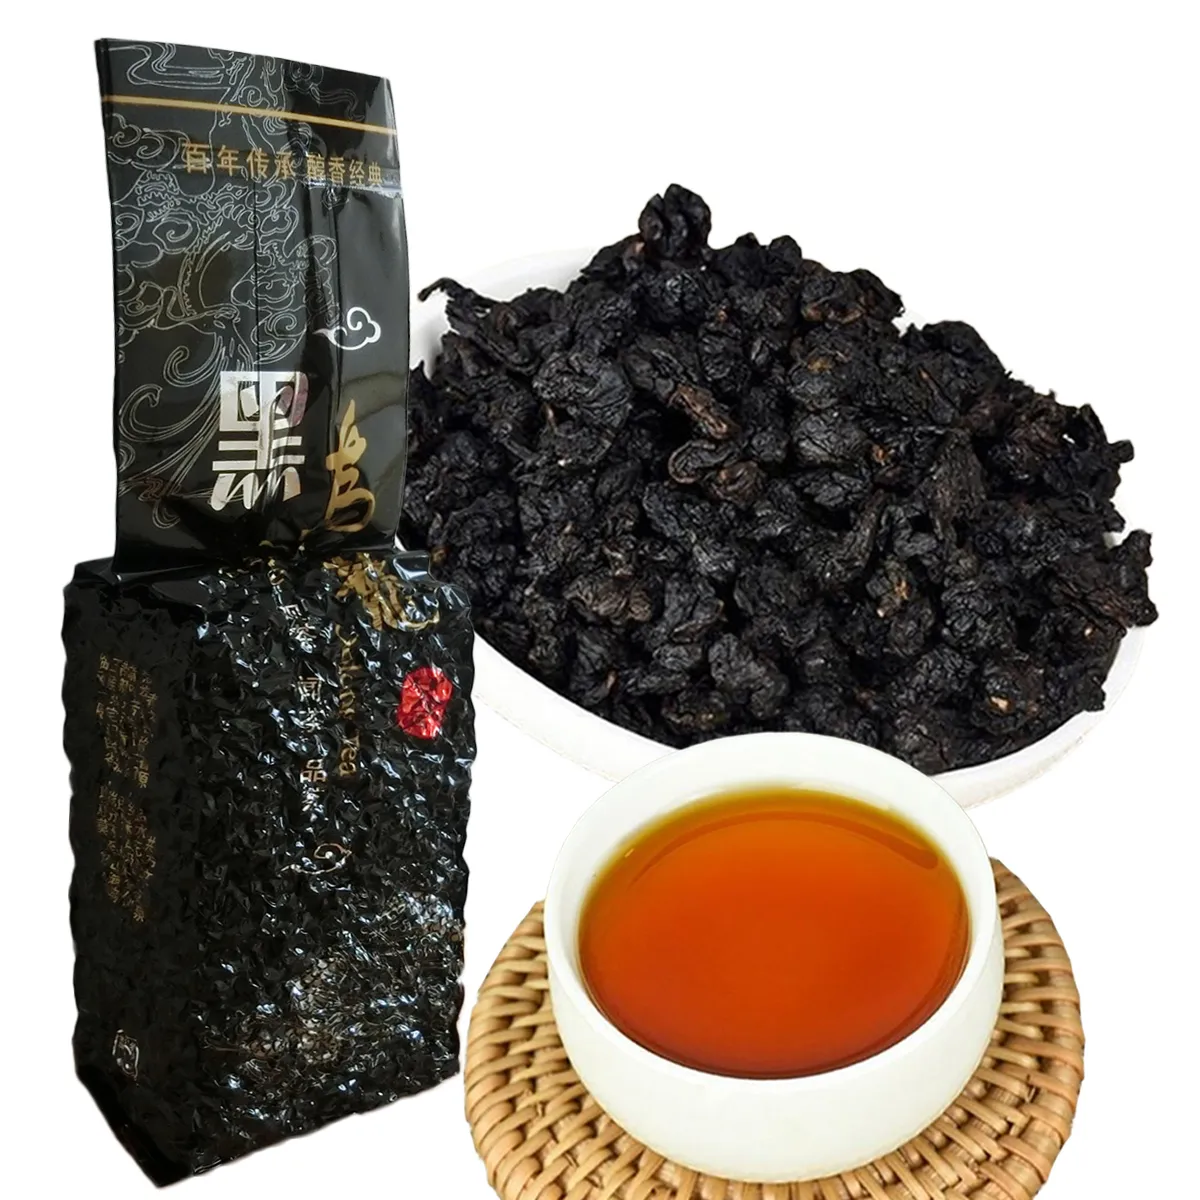 Горячие продажи 250g китайский Органические Улун чай Черный Улун запеченный Tieguanyin Черный чай Health Care New Spring Tea Green Food